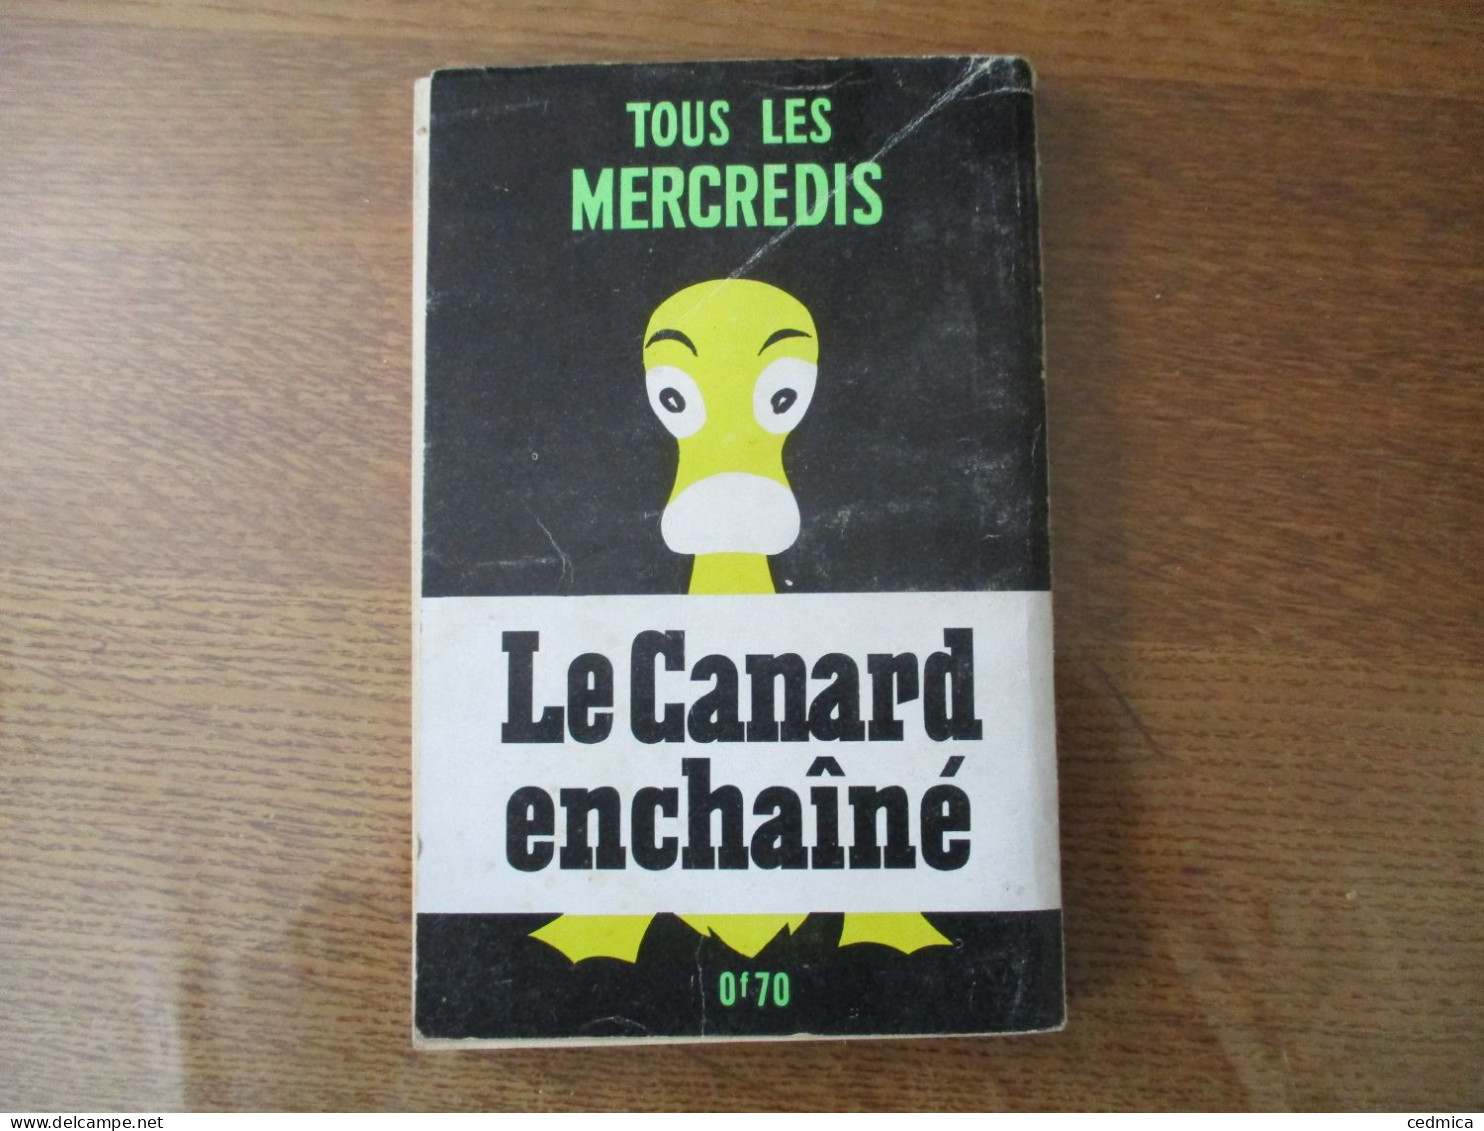 LE CANARD DE POCHE VOUS PRESENTE 50 ANS DE CANARD ANTHOLOGIE DU CANARD ENCHAÎNE TOME II (1944-1965) - Politik